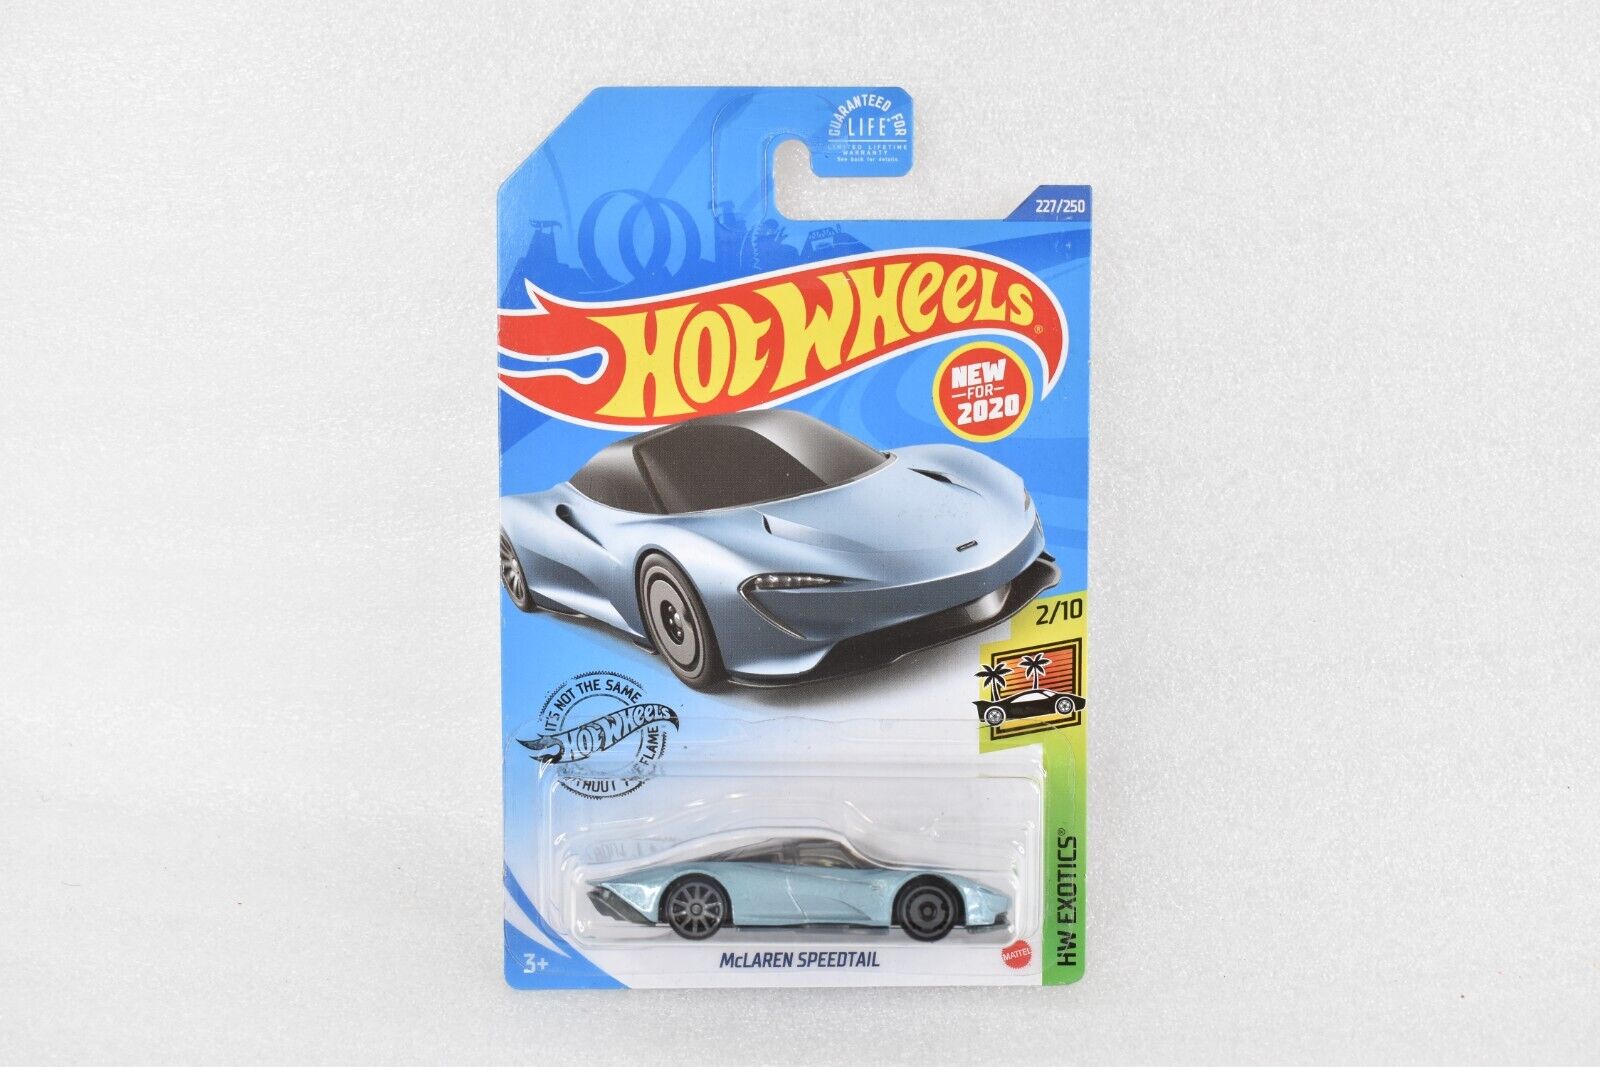 Hot Wheels '20,McLaren Speedtail 227/250 HW Exotics 2/10 Metalflake